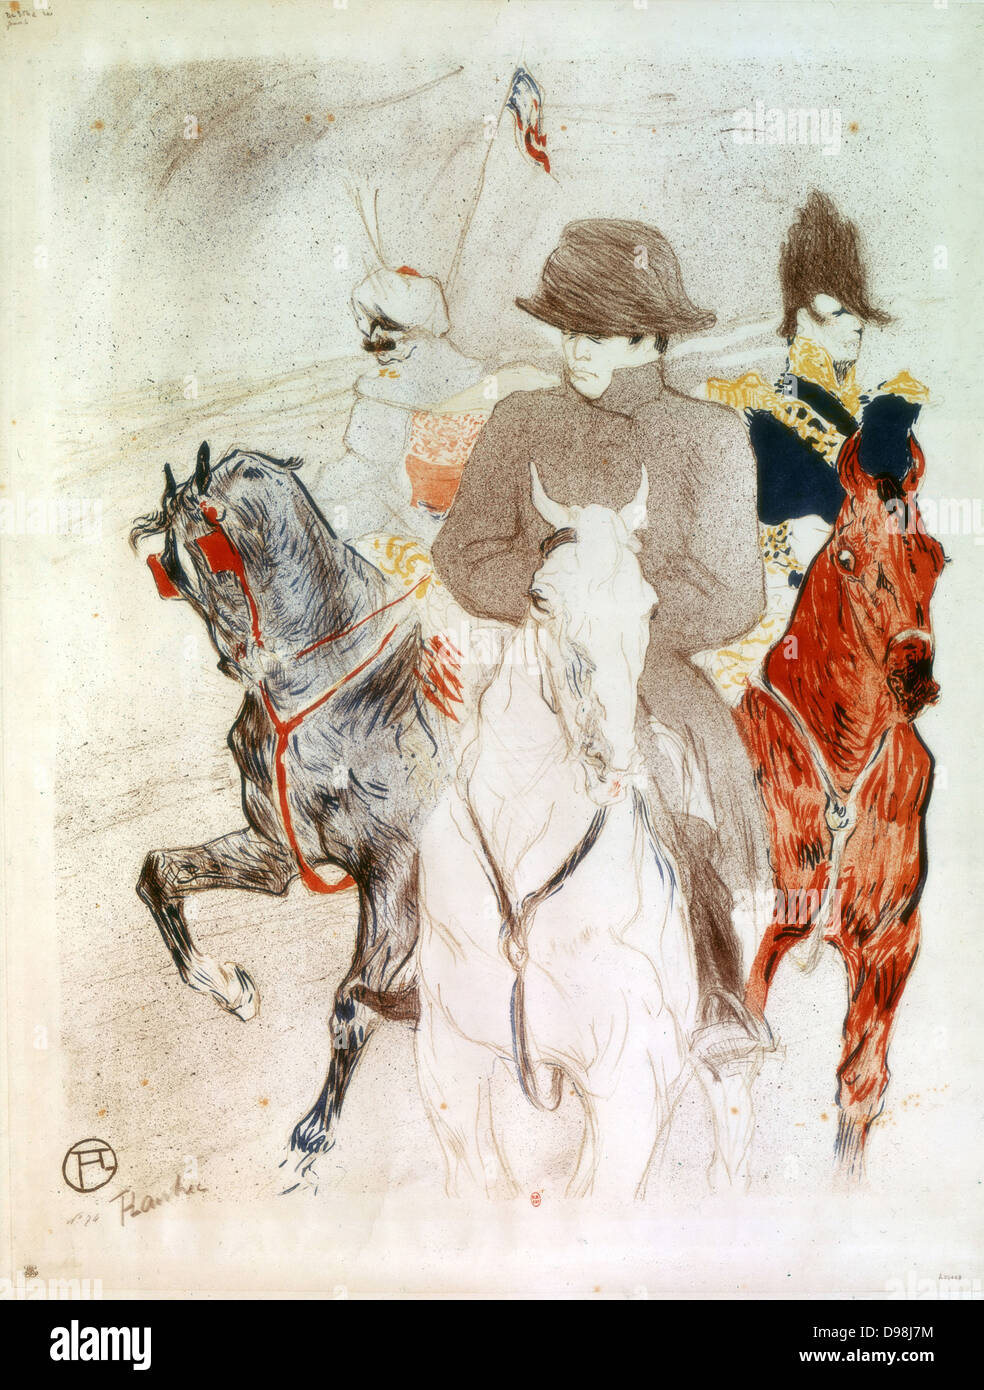 Napoleón I' , Litografía por Henri de Toulouse-Lautrec (1864-1901) artista francés. Post-Impressionis, Art Nouveau. Napoleón en caballo blanco, seguido por el oficial francés en un castaño y turbaned figura en un gris. Foto de stock